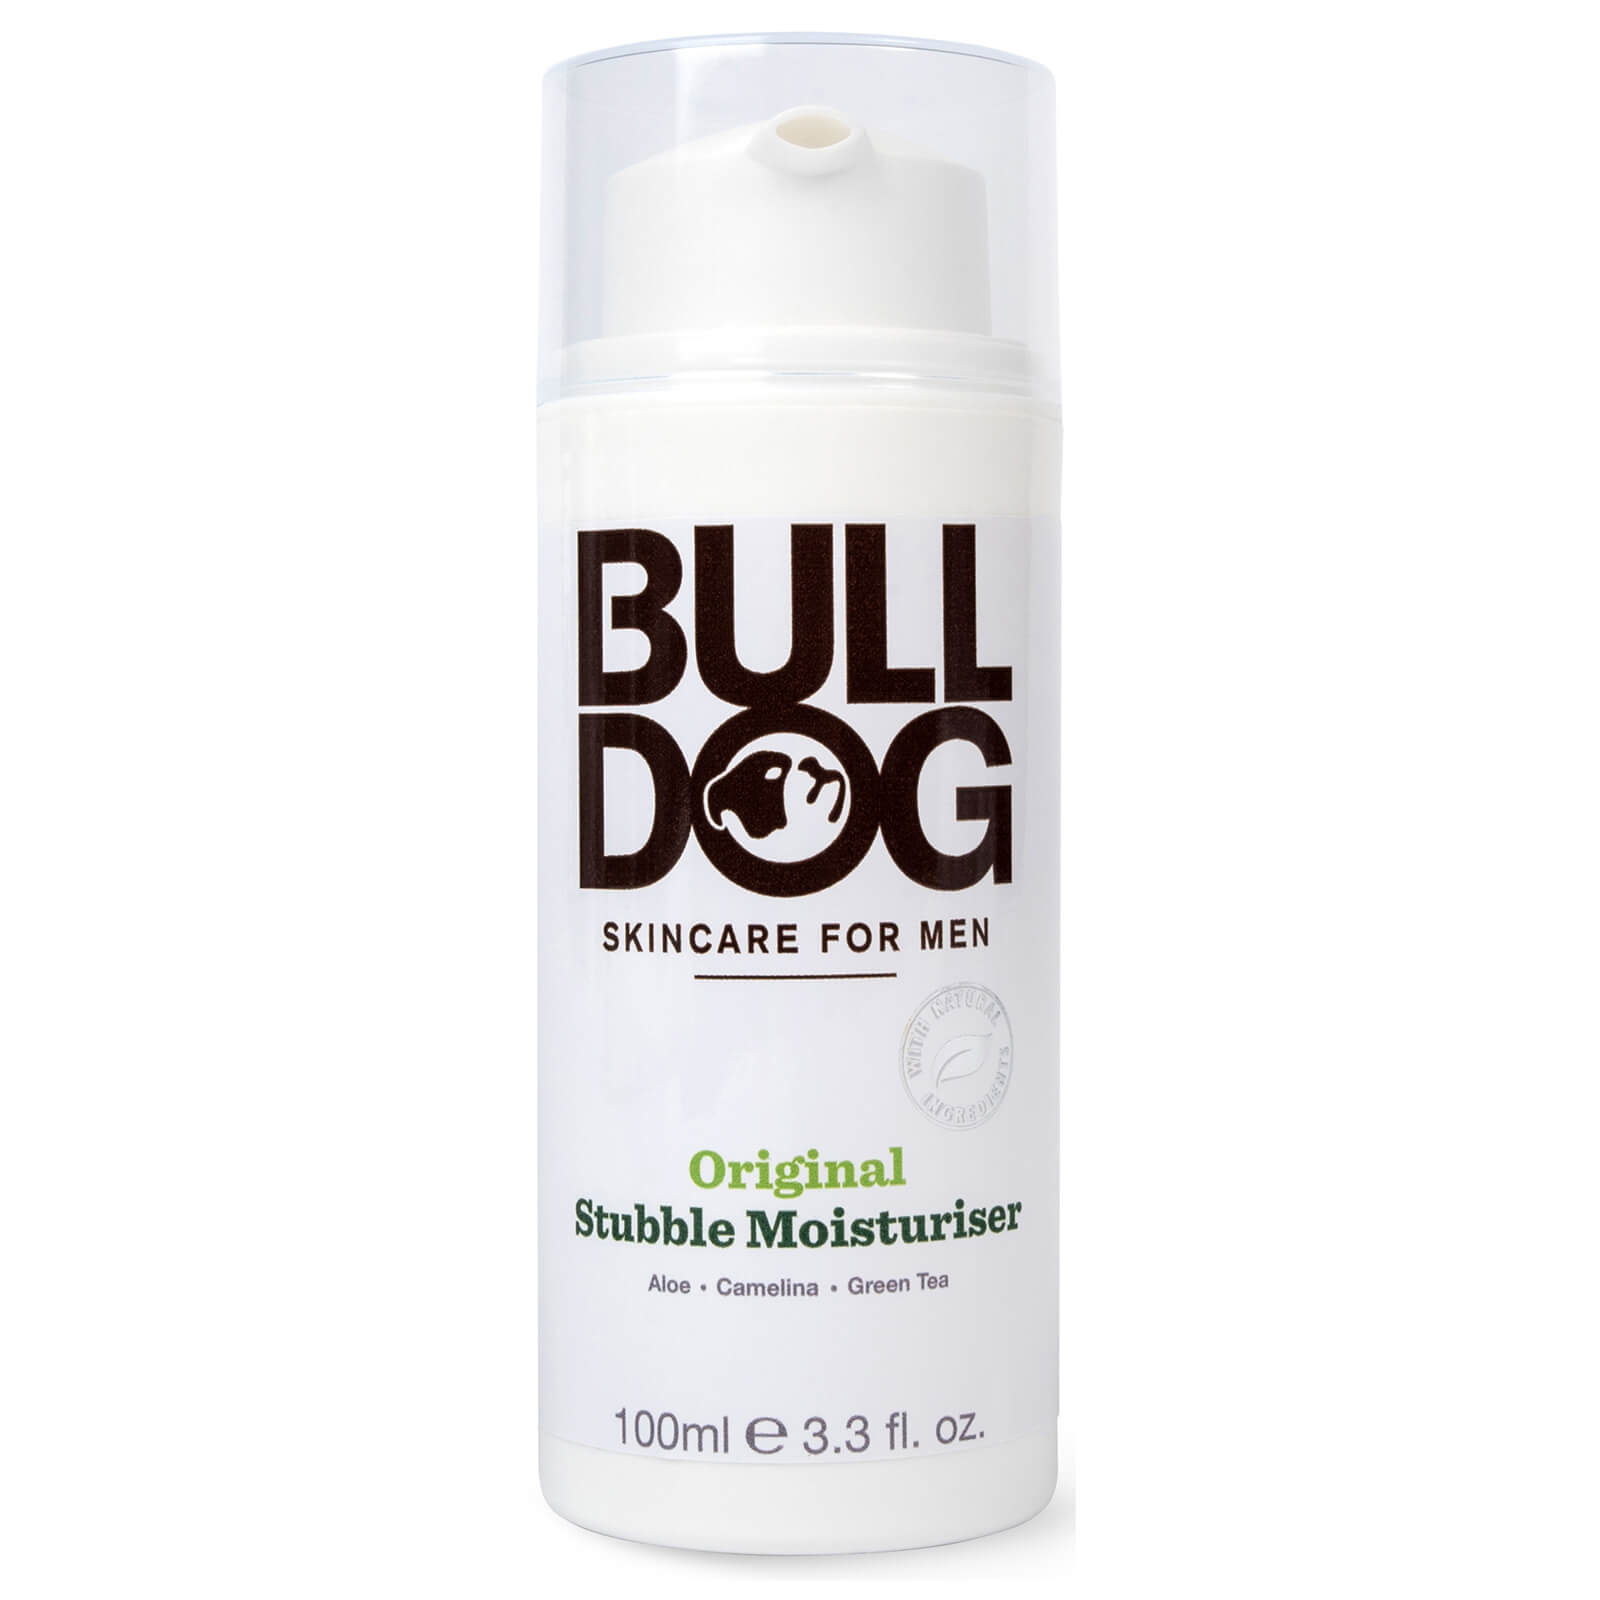 Bulldog Skincare for Men Bulldog Stubble Moisturiser 100 ml